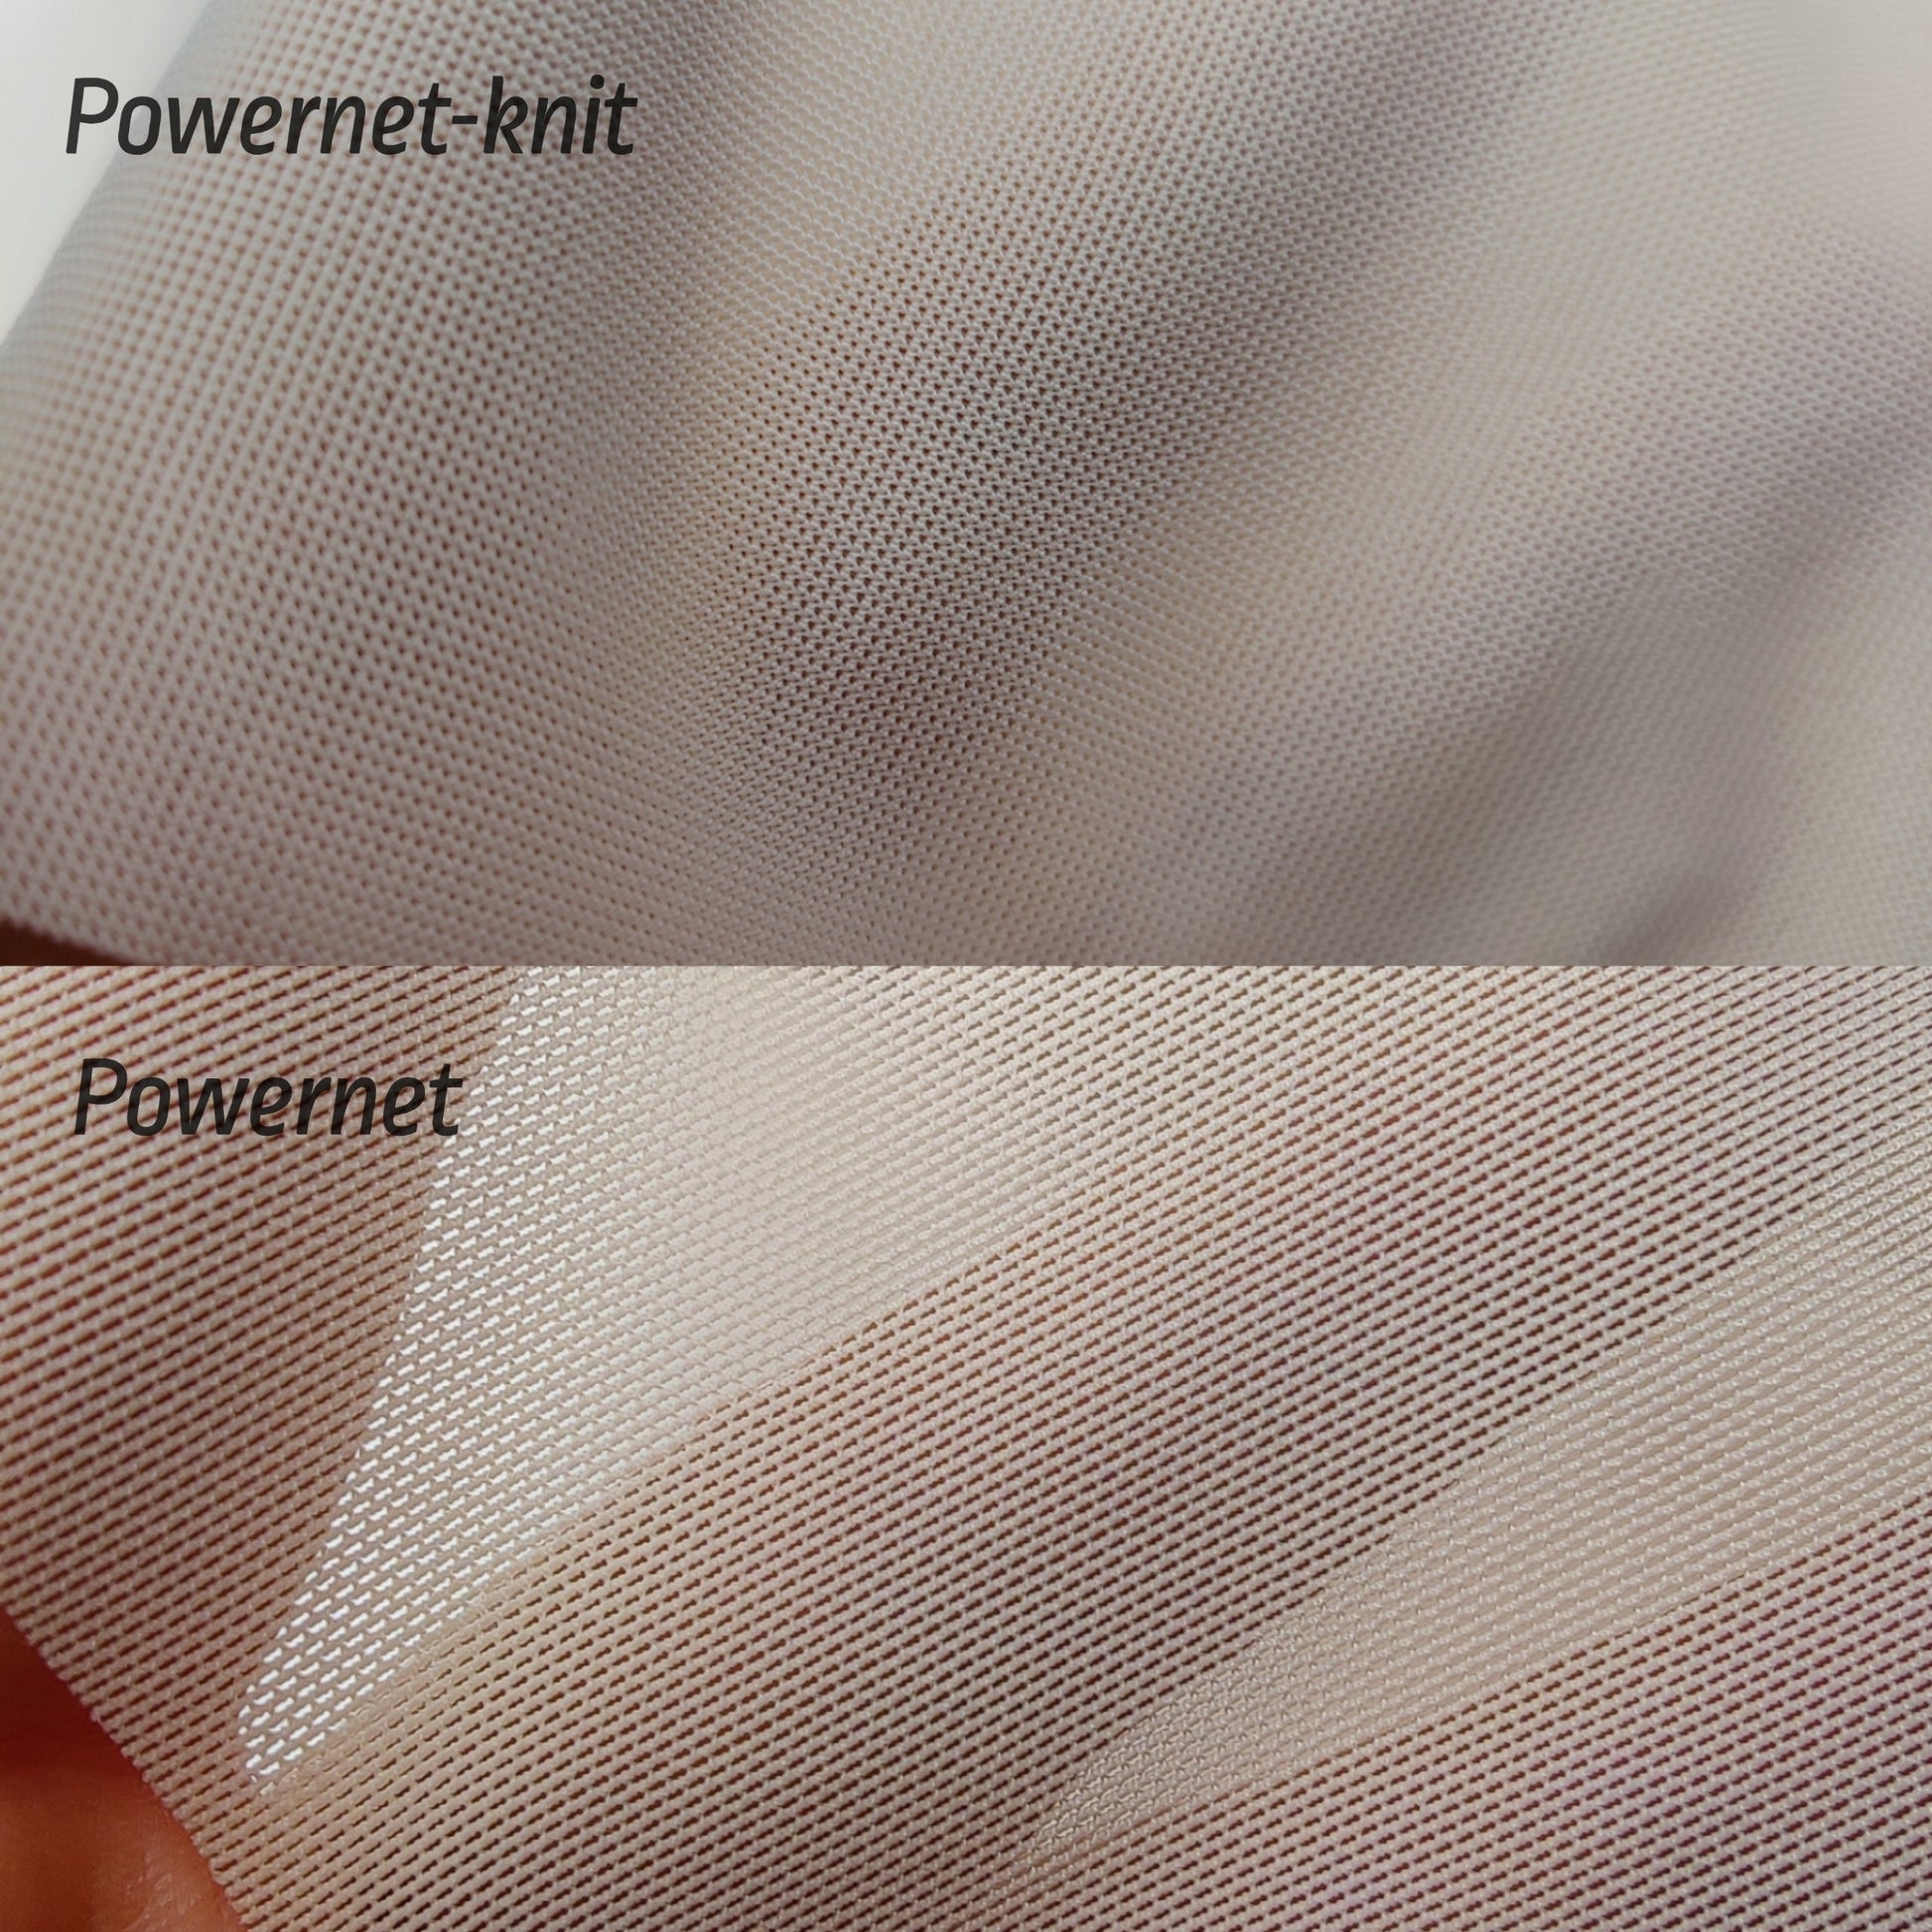 Powernet-Knit dunkelrot IDpwx8 LingerieMeMade